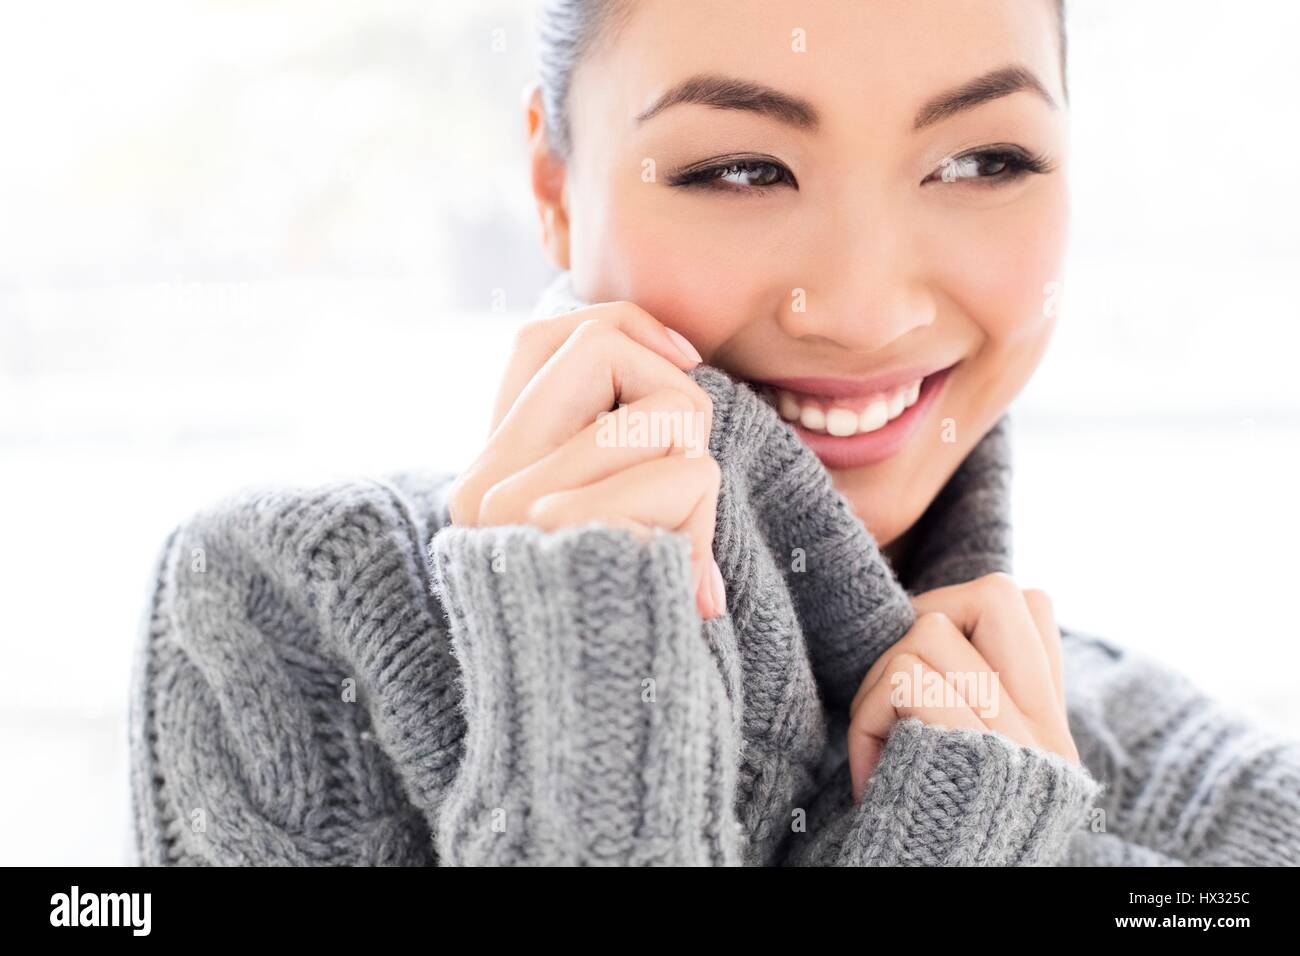 -MODELL VERÖFFENTLICHT. Junge asiatische Frau tragen graue Strickpullover, Portrait. Stockfoto